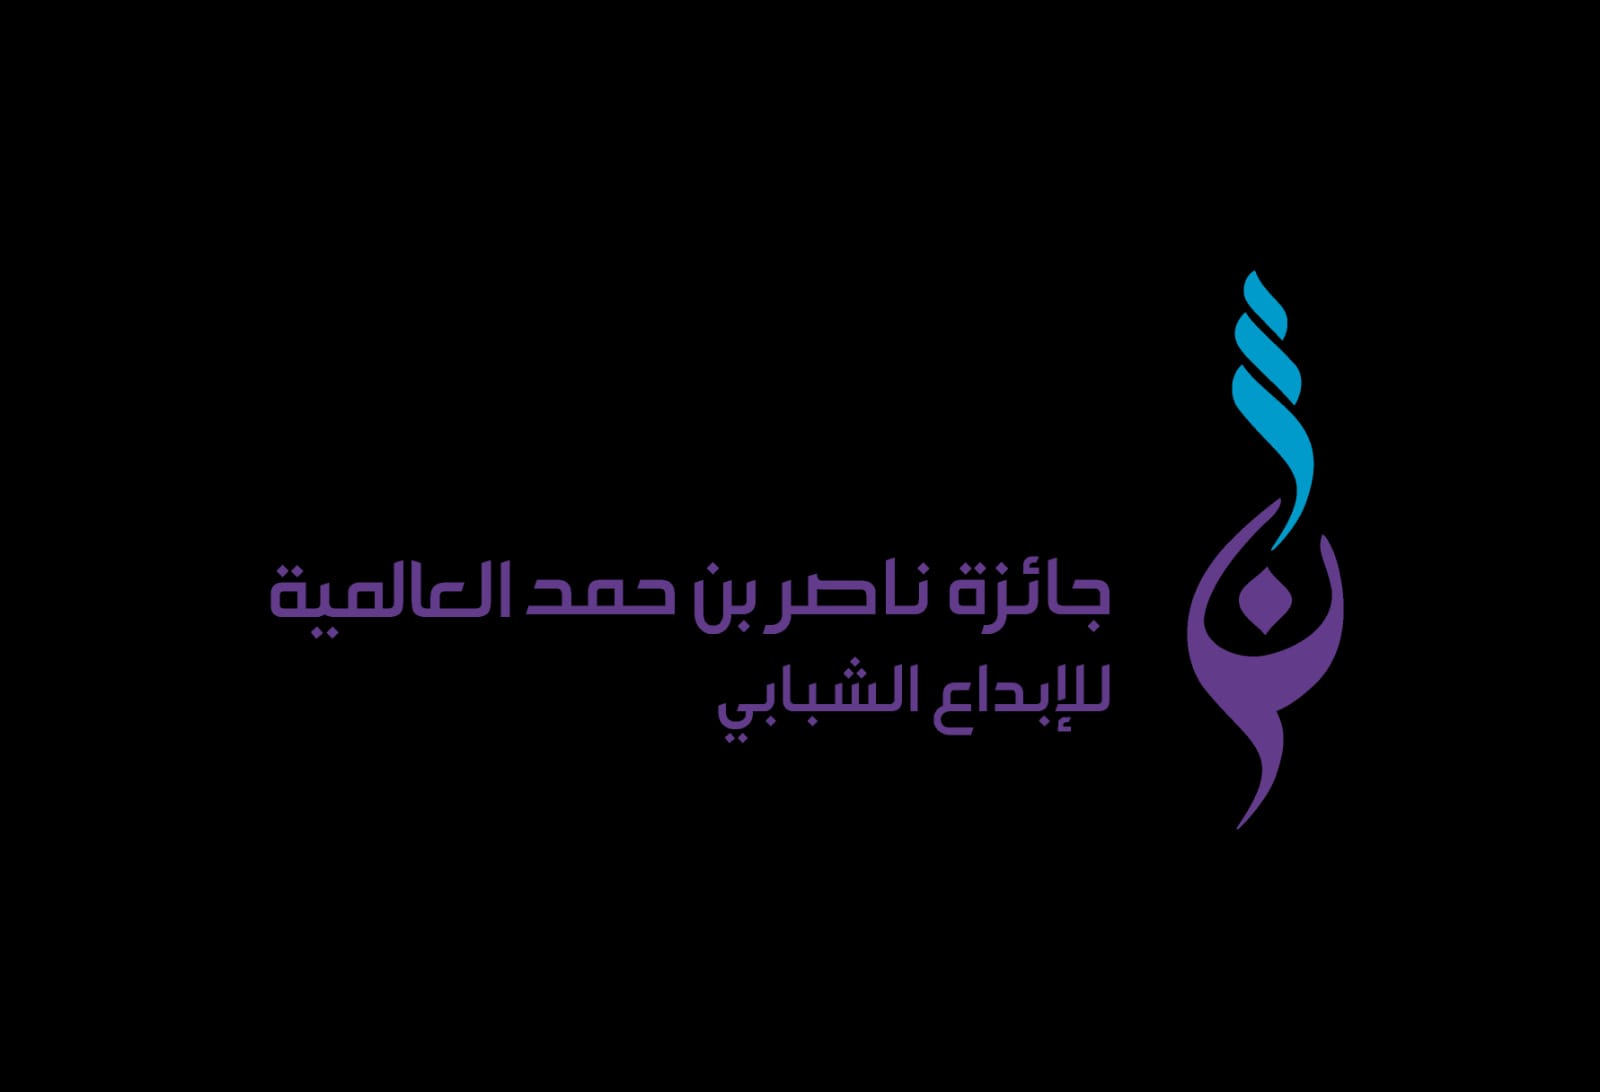 Nasser bin Hamad International Award for Youth Creativity